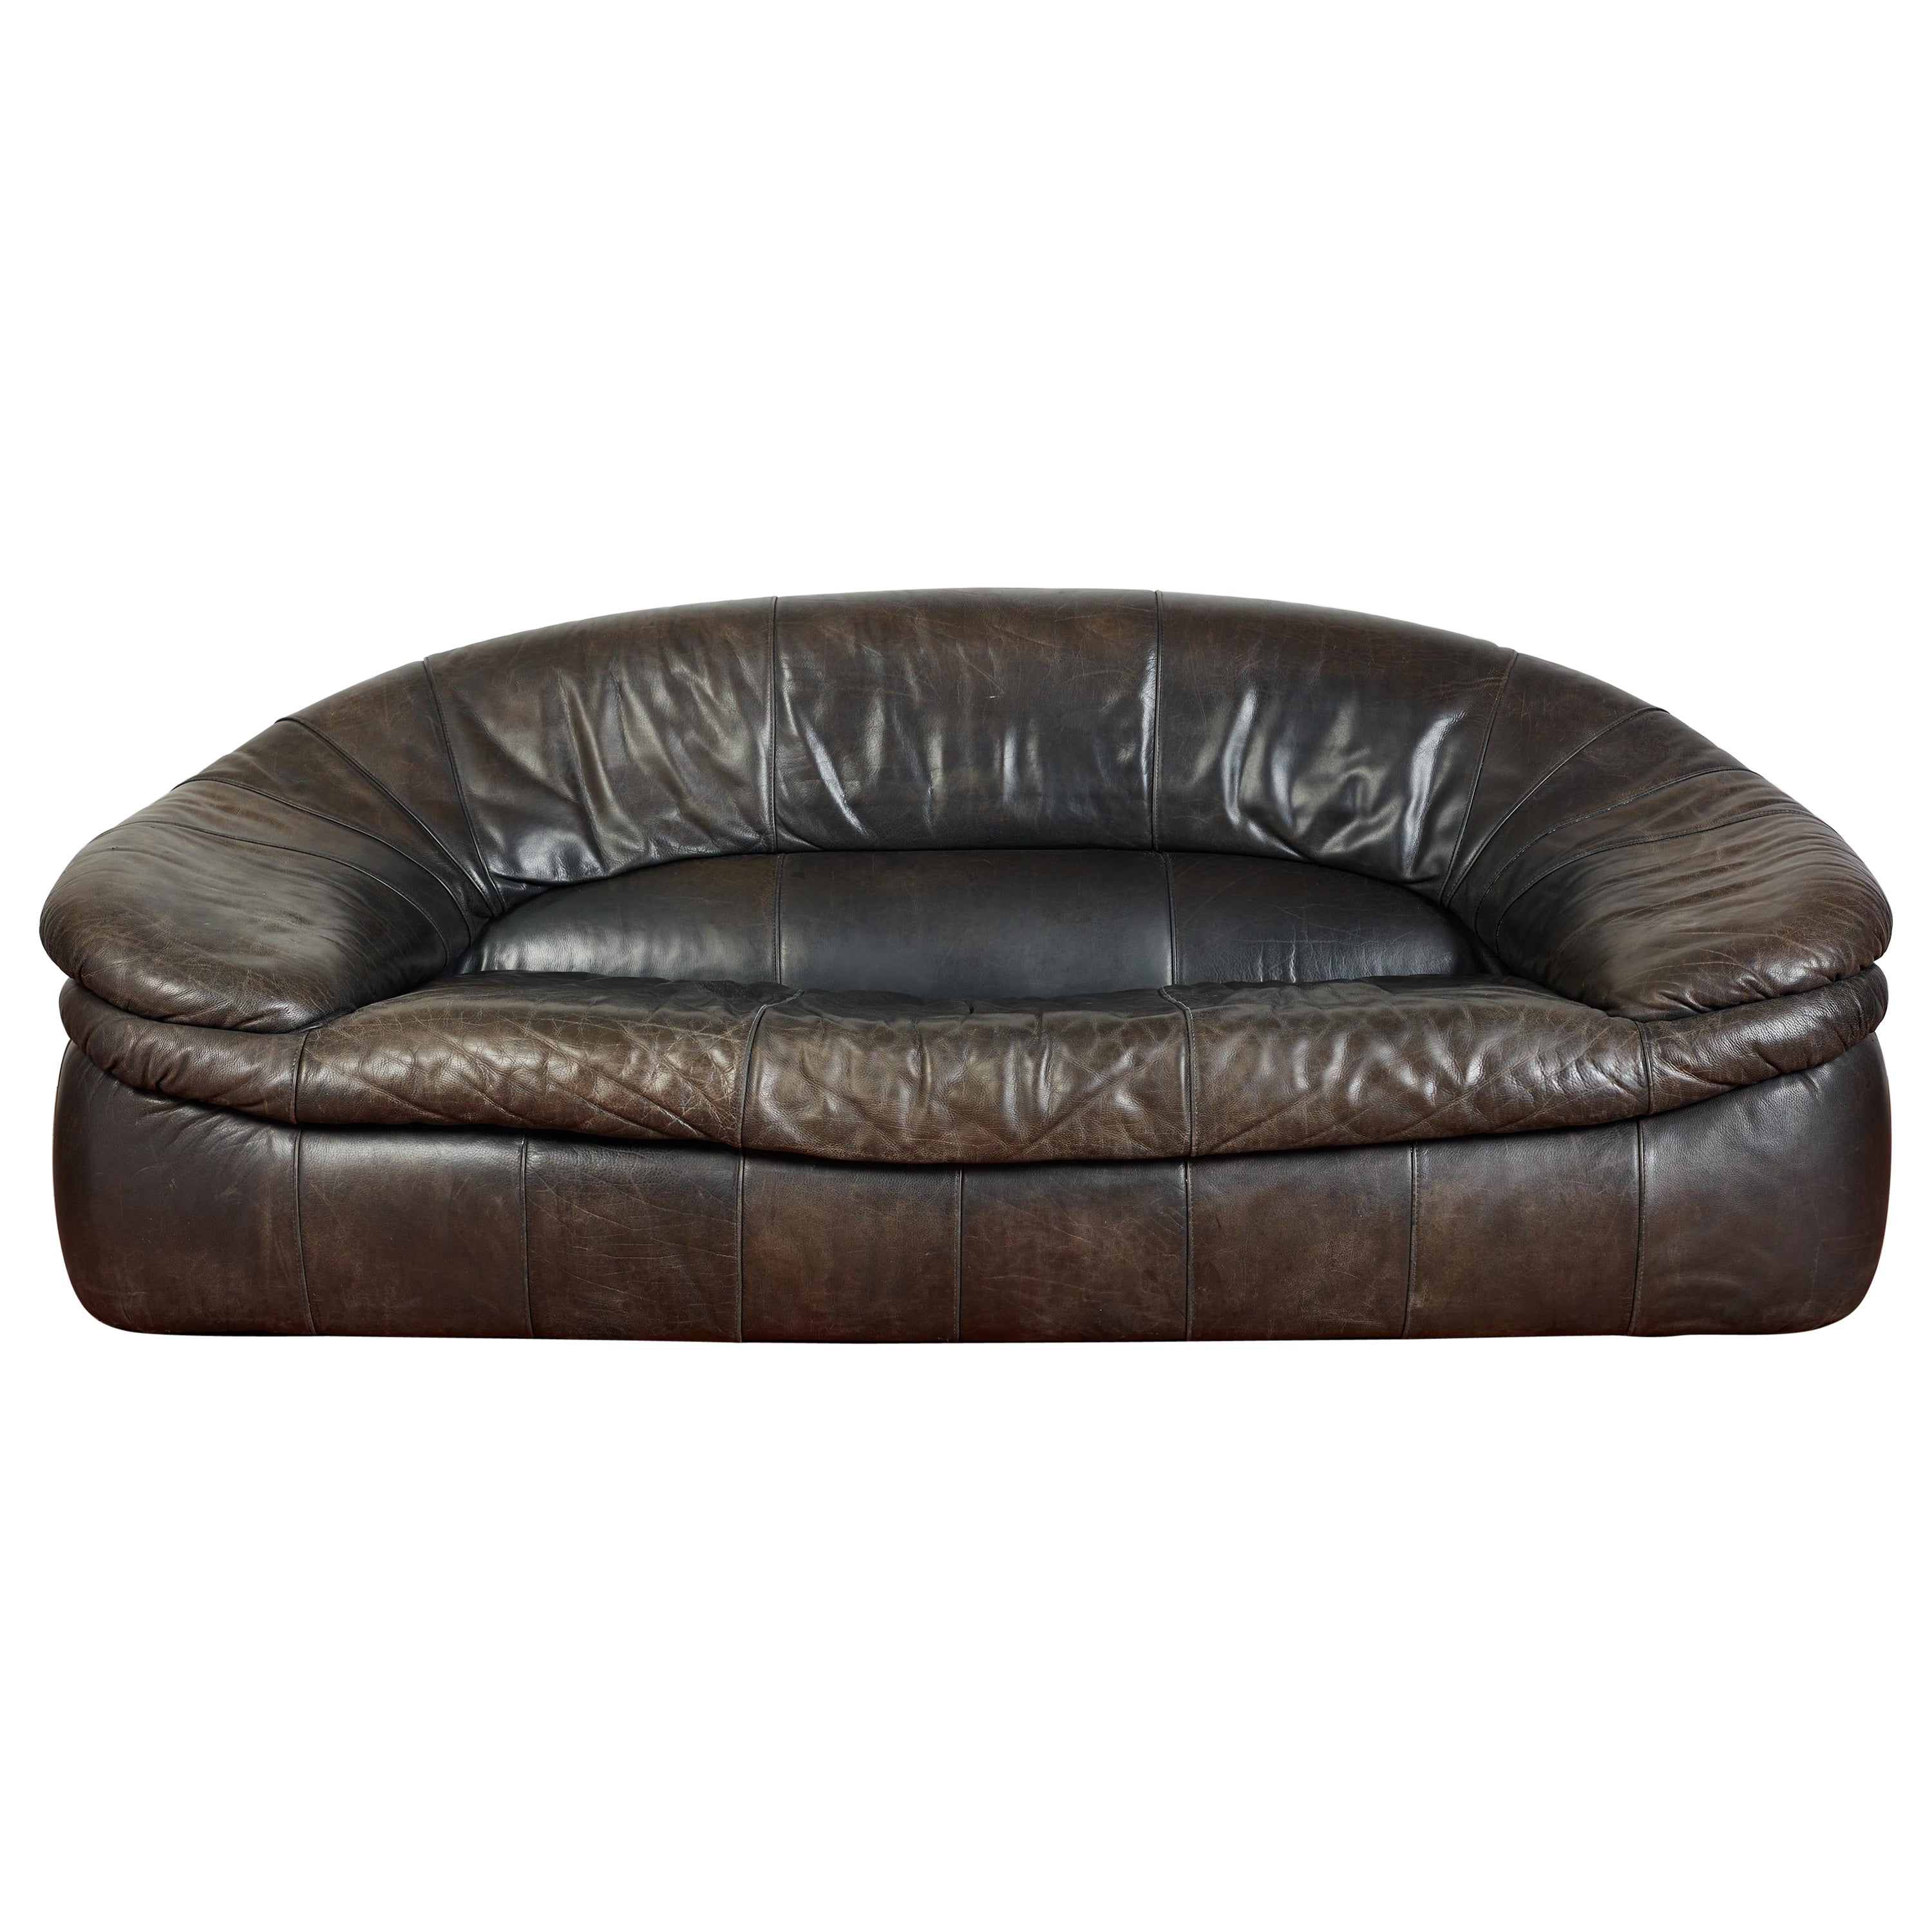 1970's Italian Leather Sofa For Sale